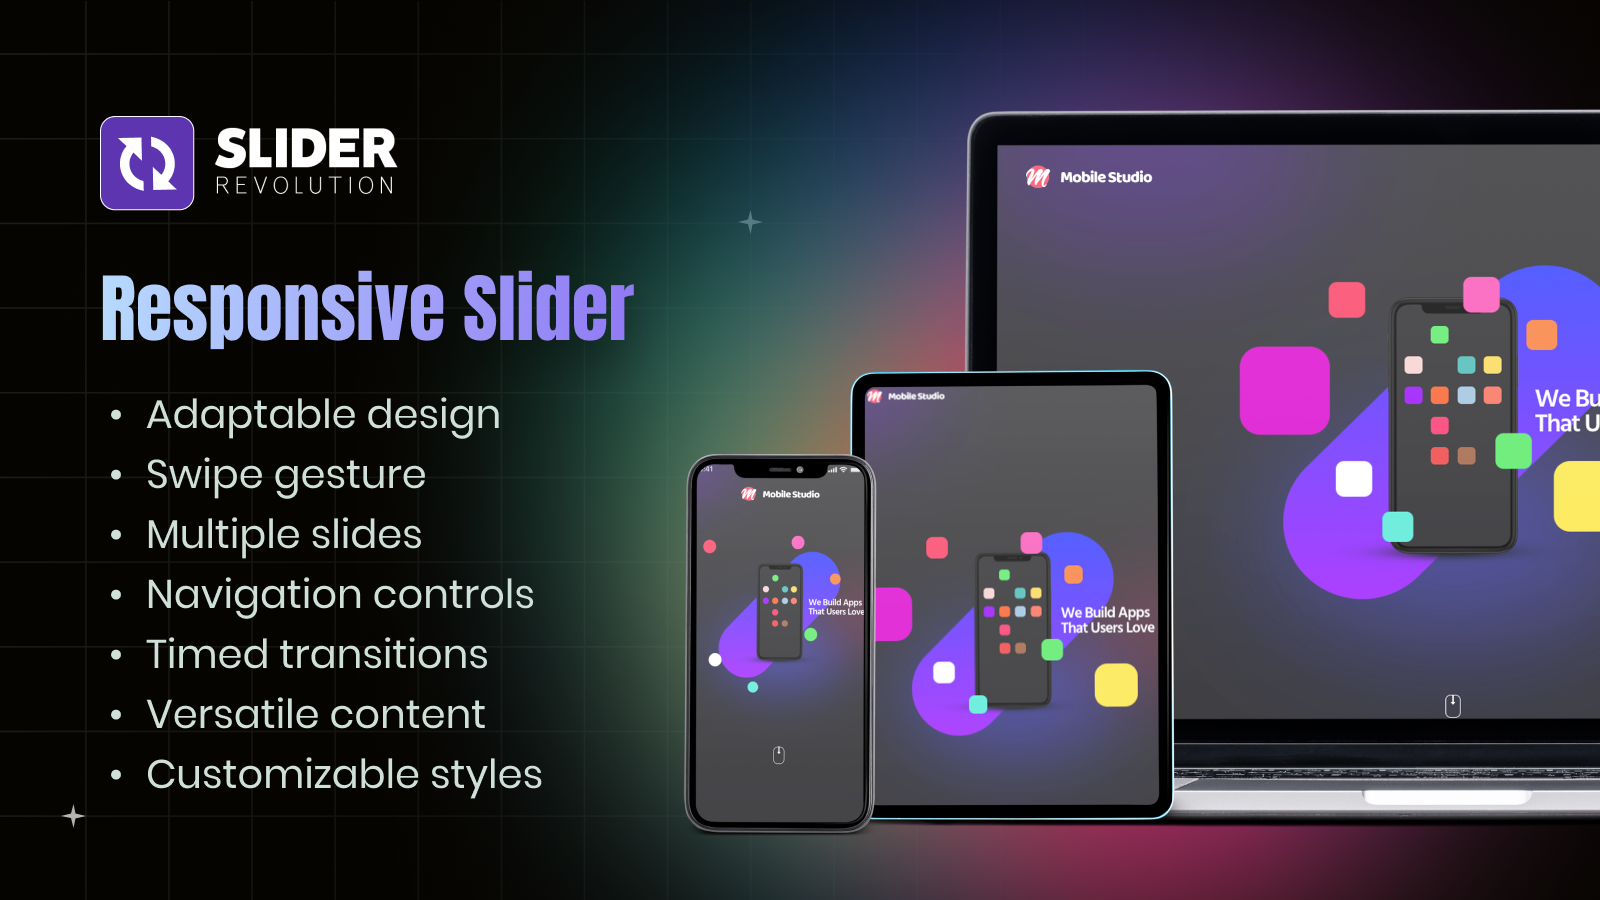 Slider totalmente responsivo para celular, tablet e desktop